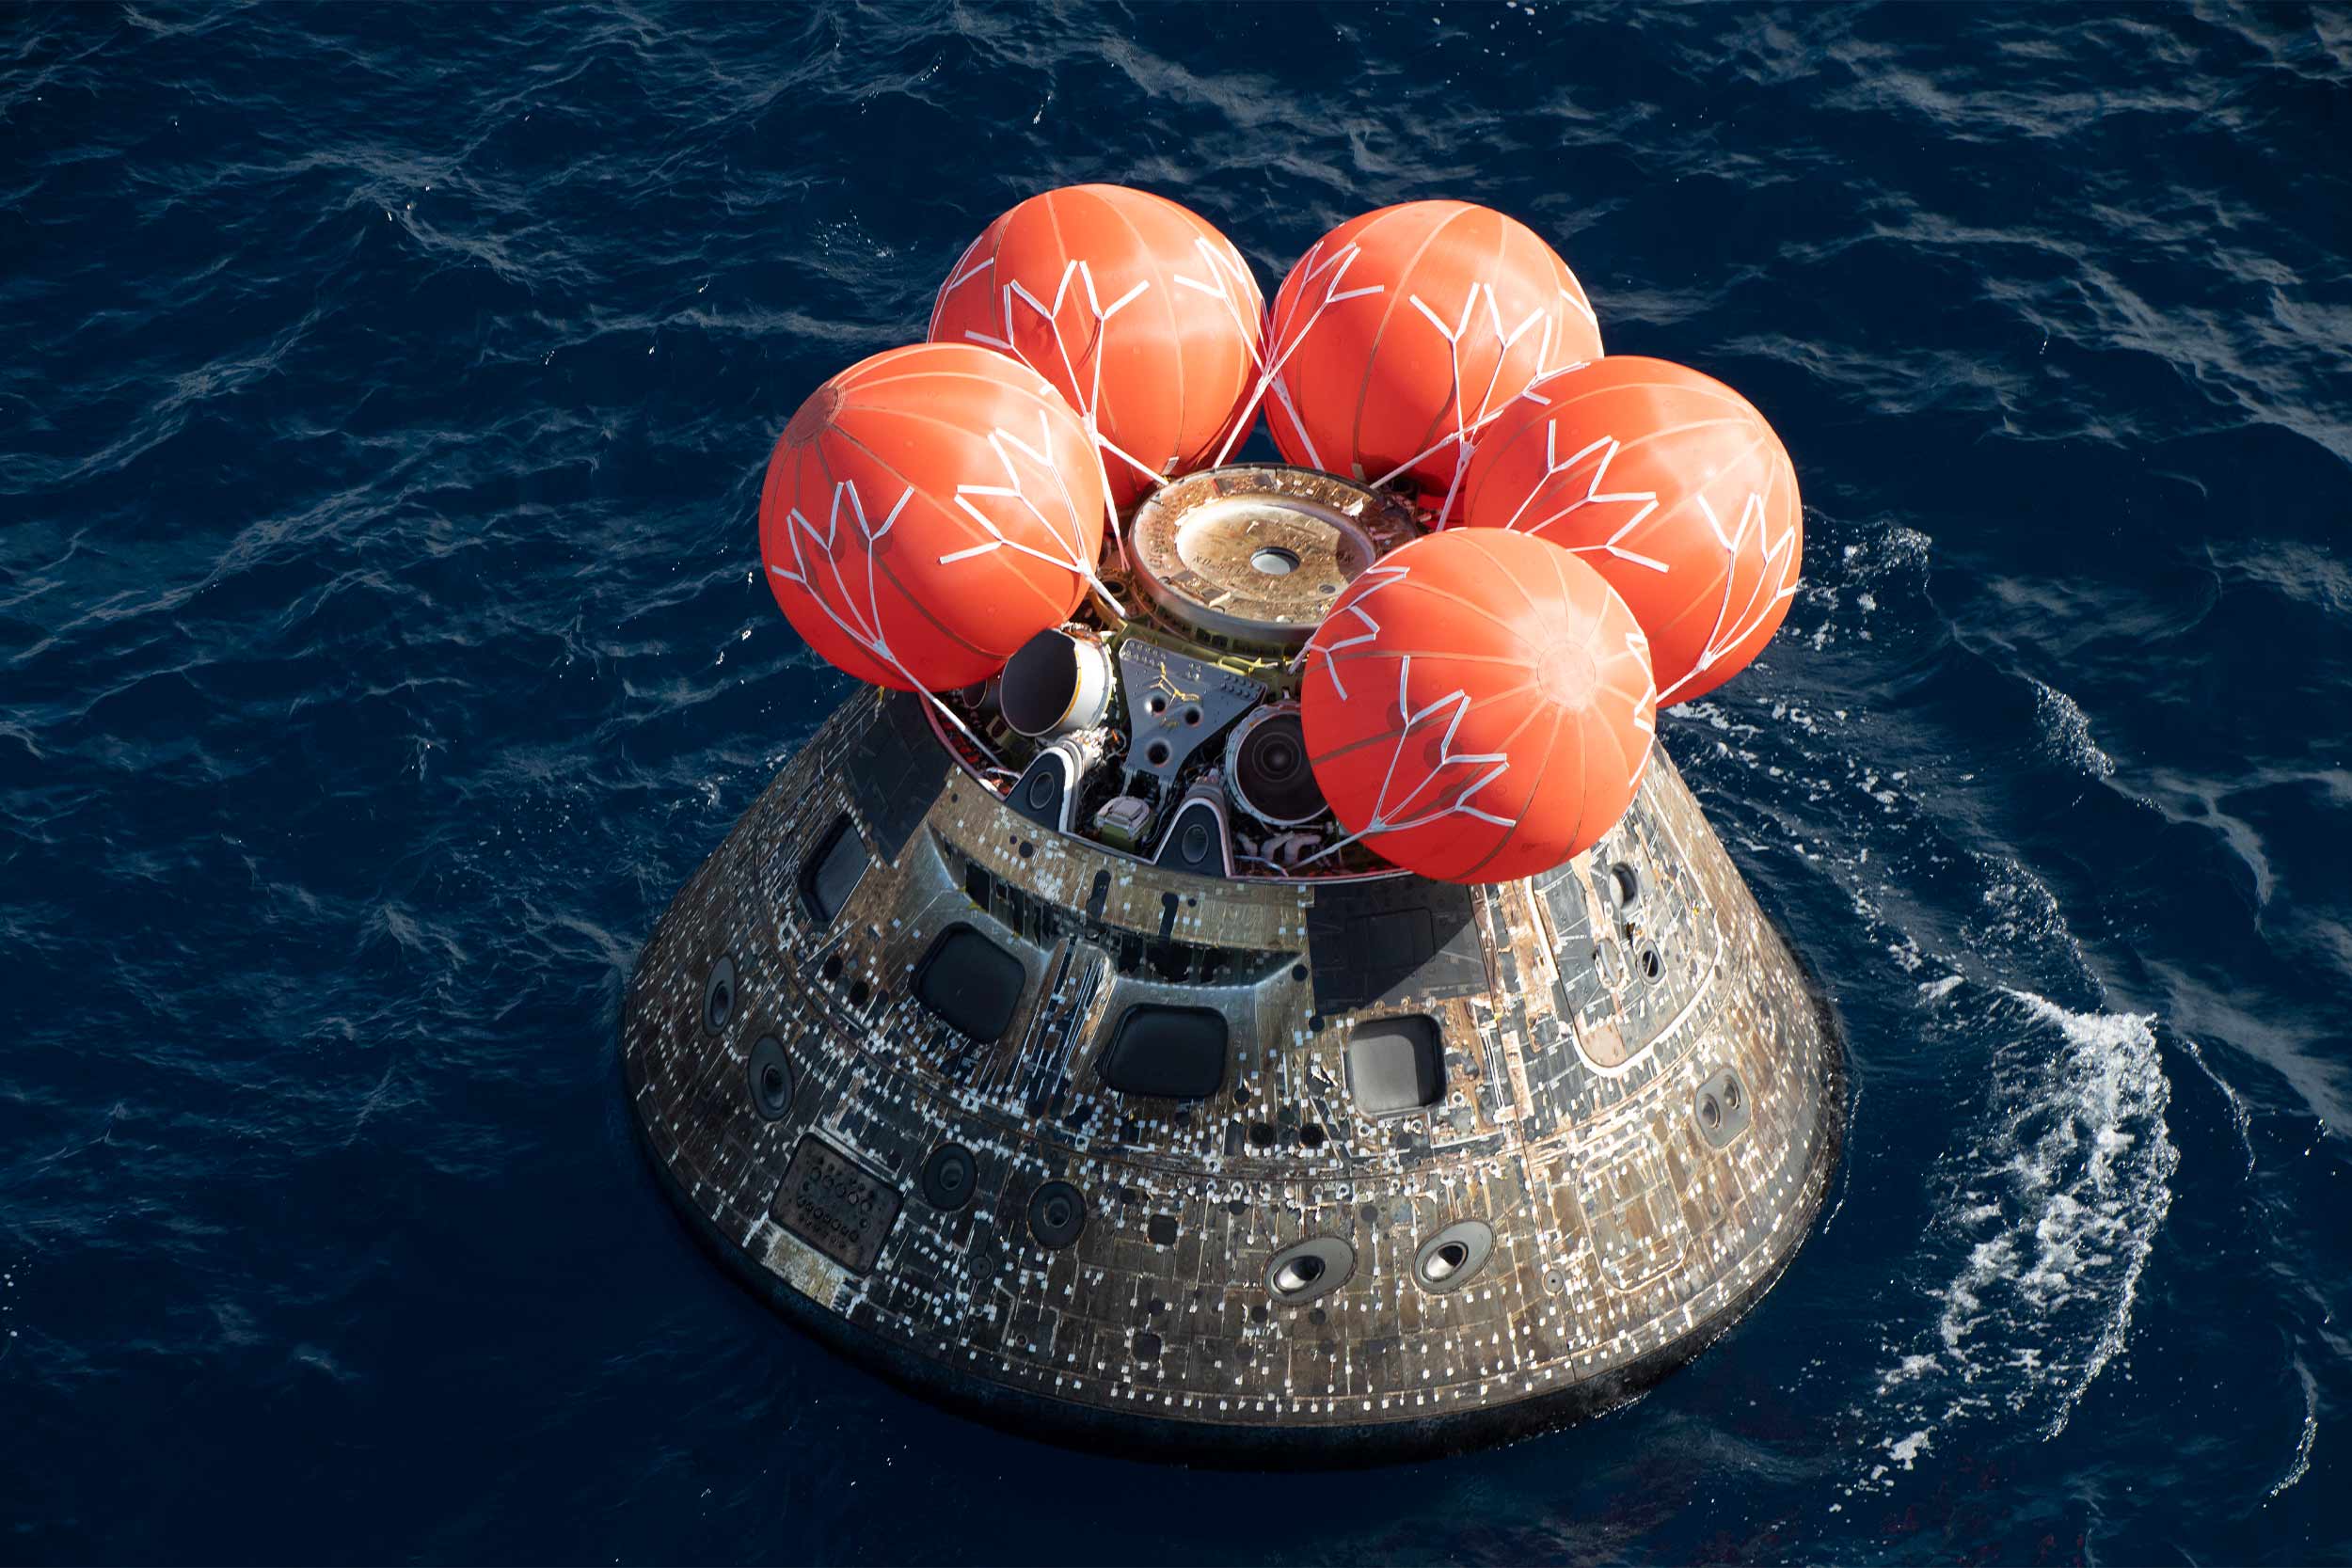 The Artemis capsule landing in water